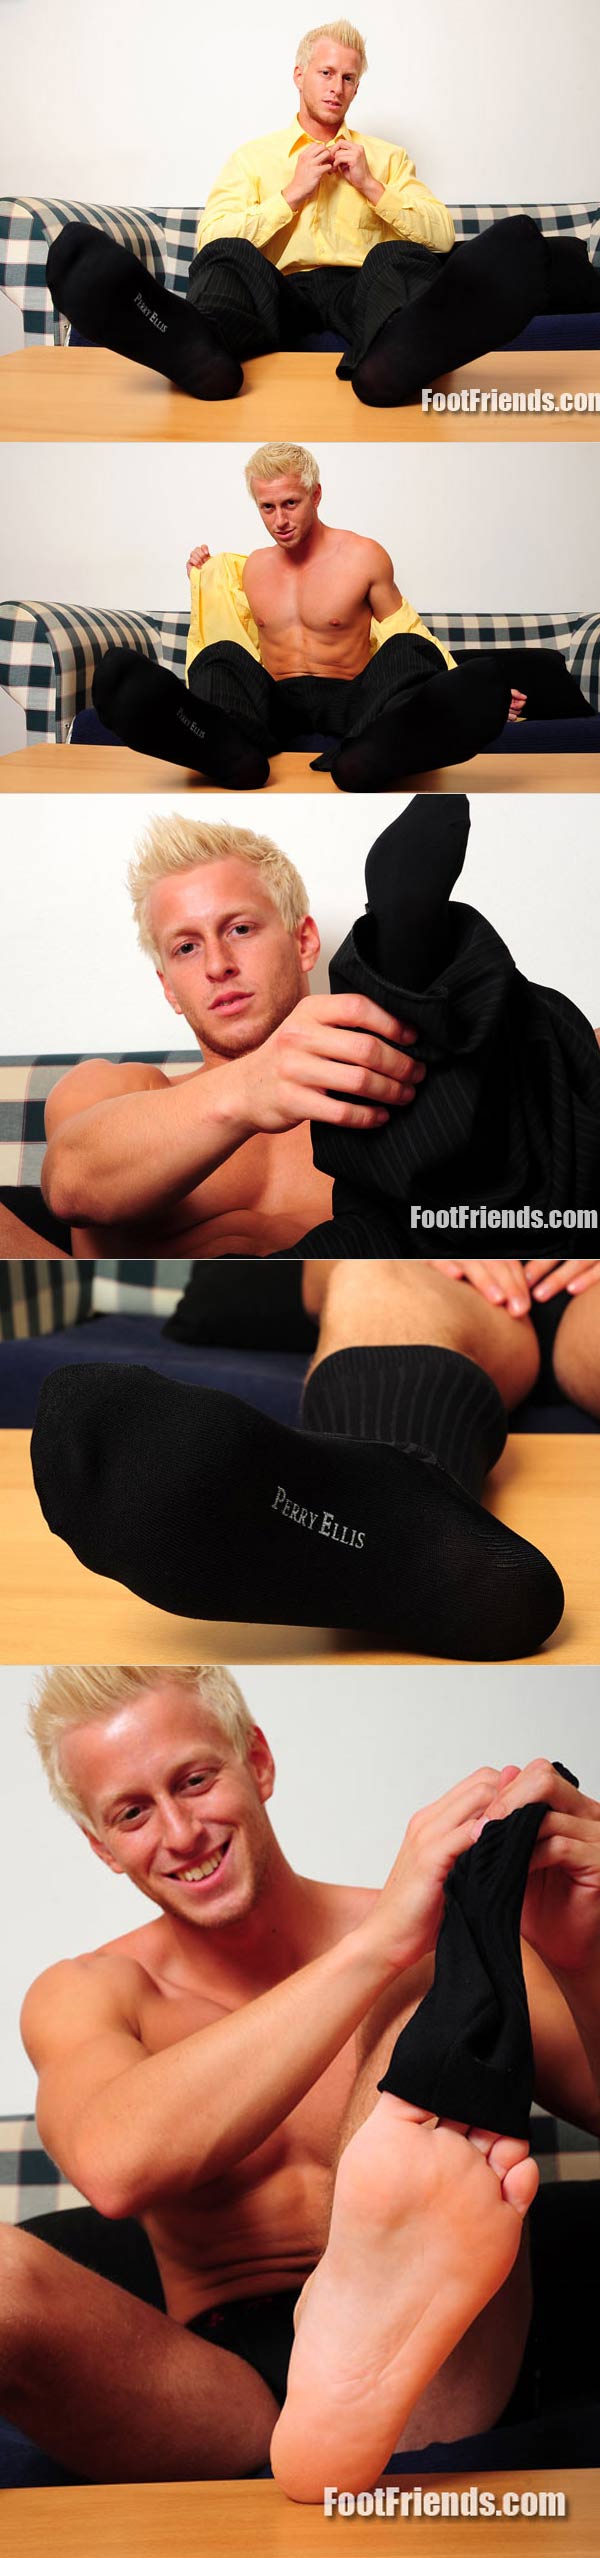 Van In Socks at FootFriends.com